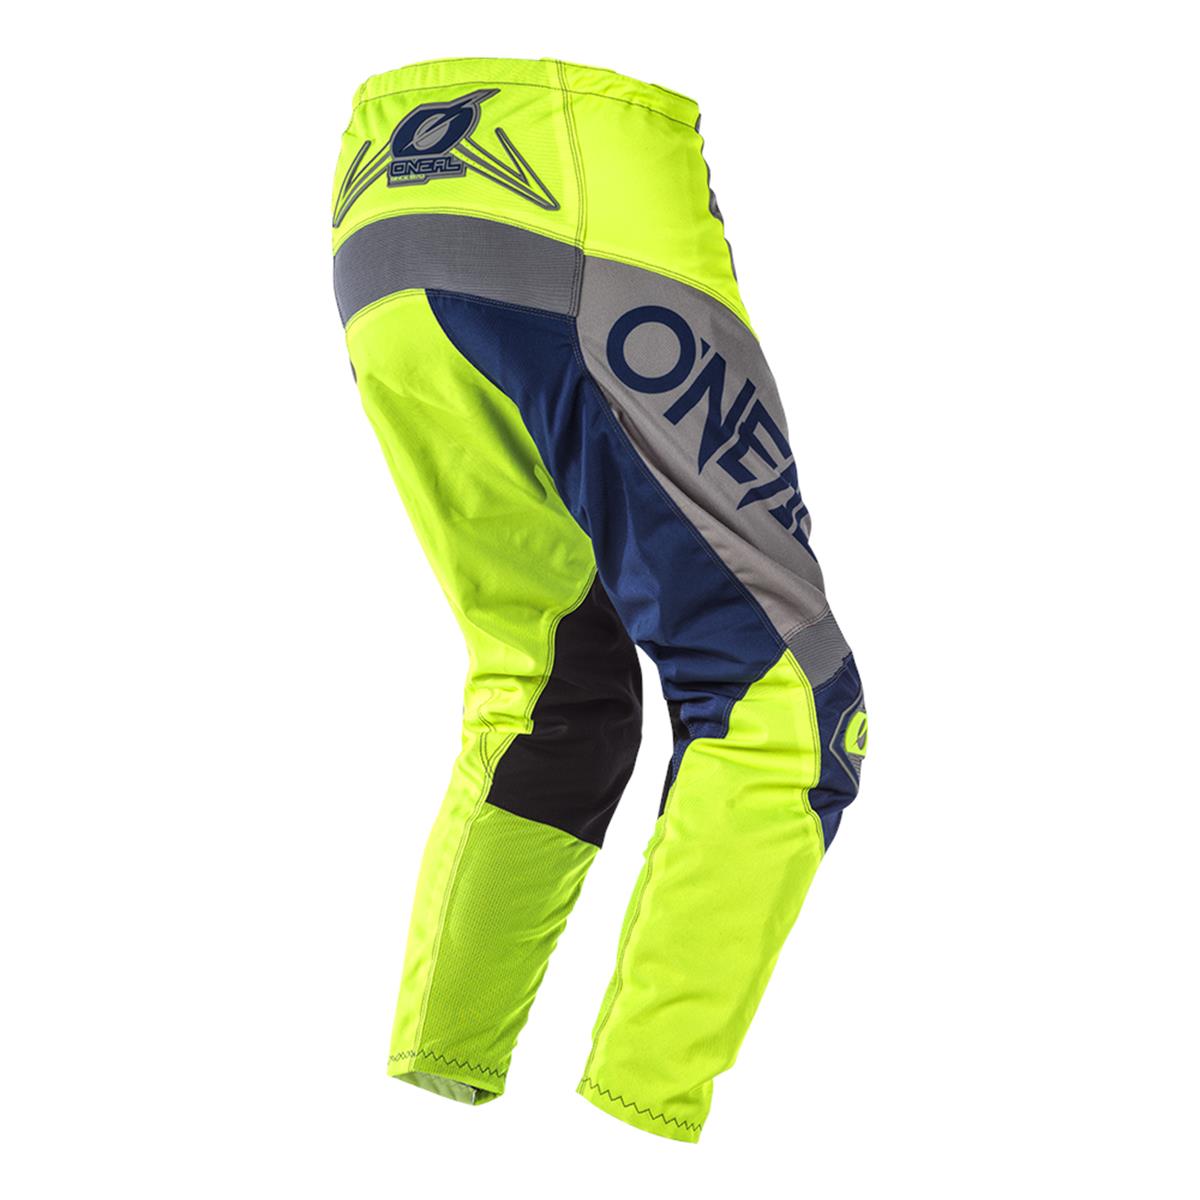 O 'Neal Element Factor MX DH MTB Pant Pantalon Long Gris/Bleu/Jaune 2020 ONEAL 